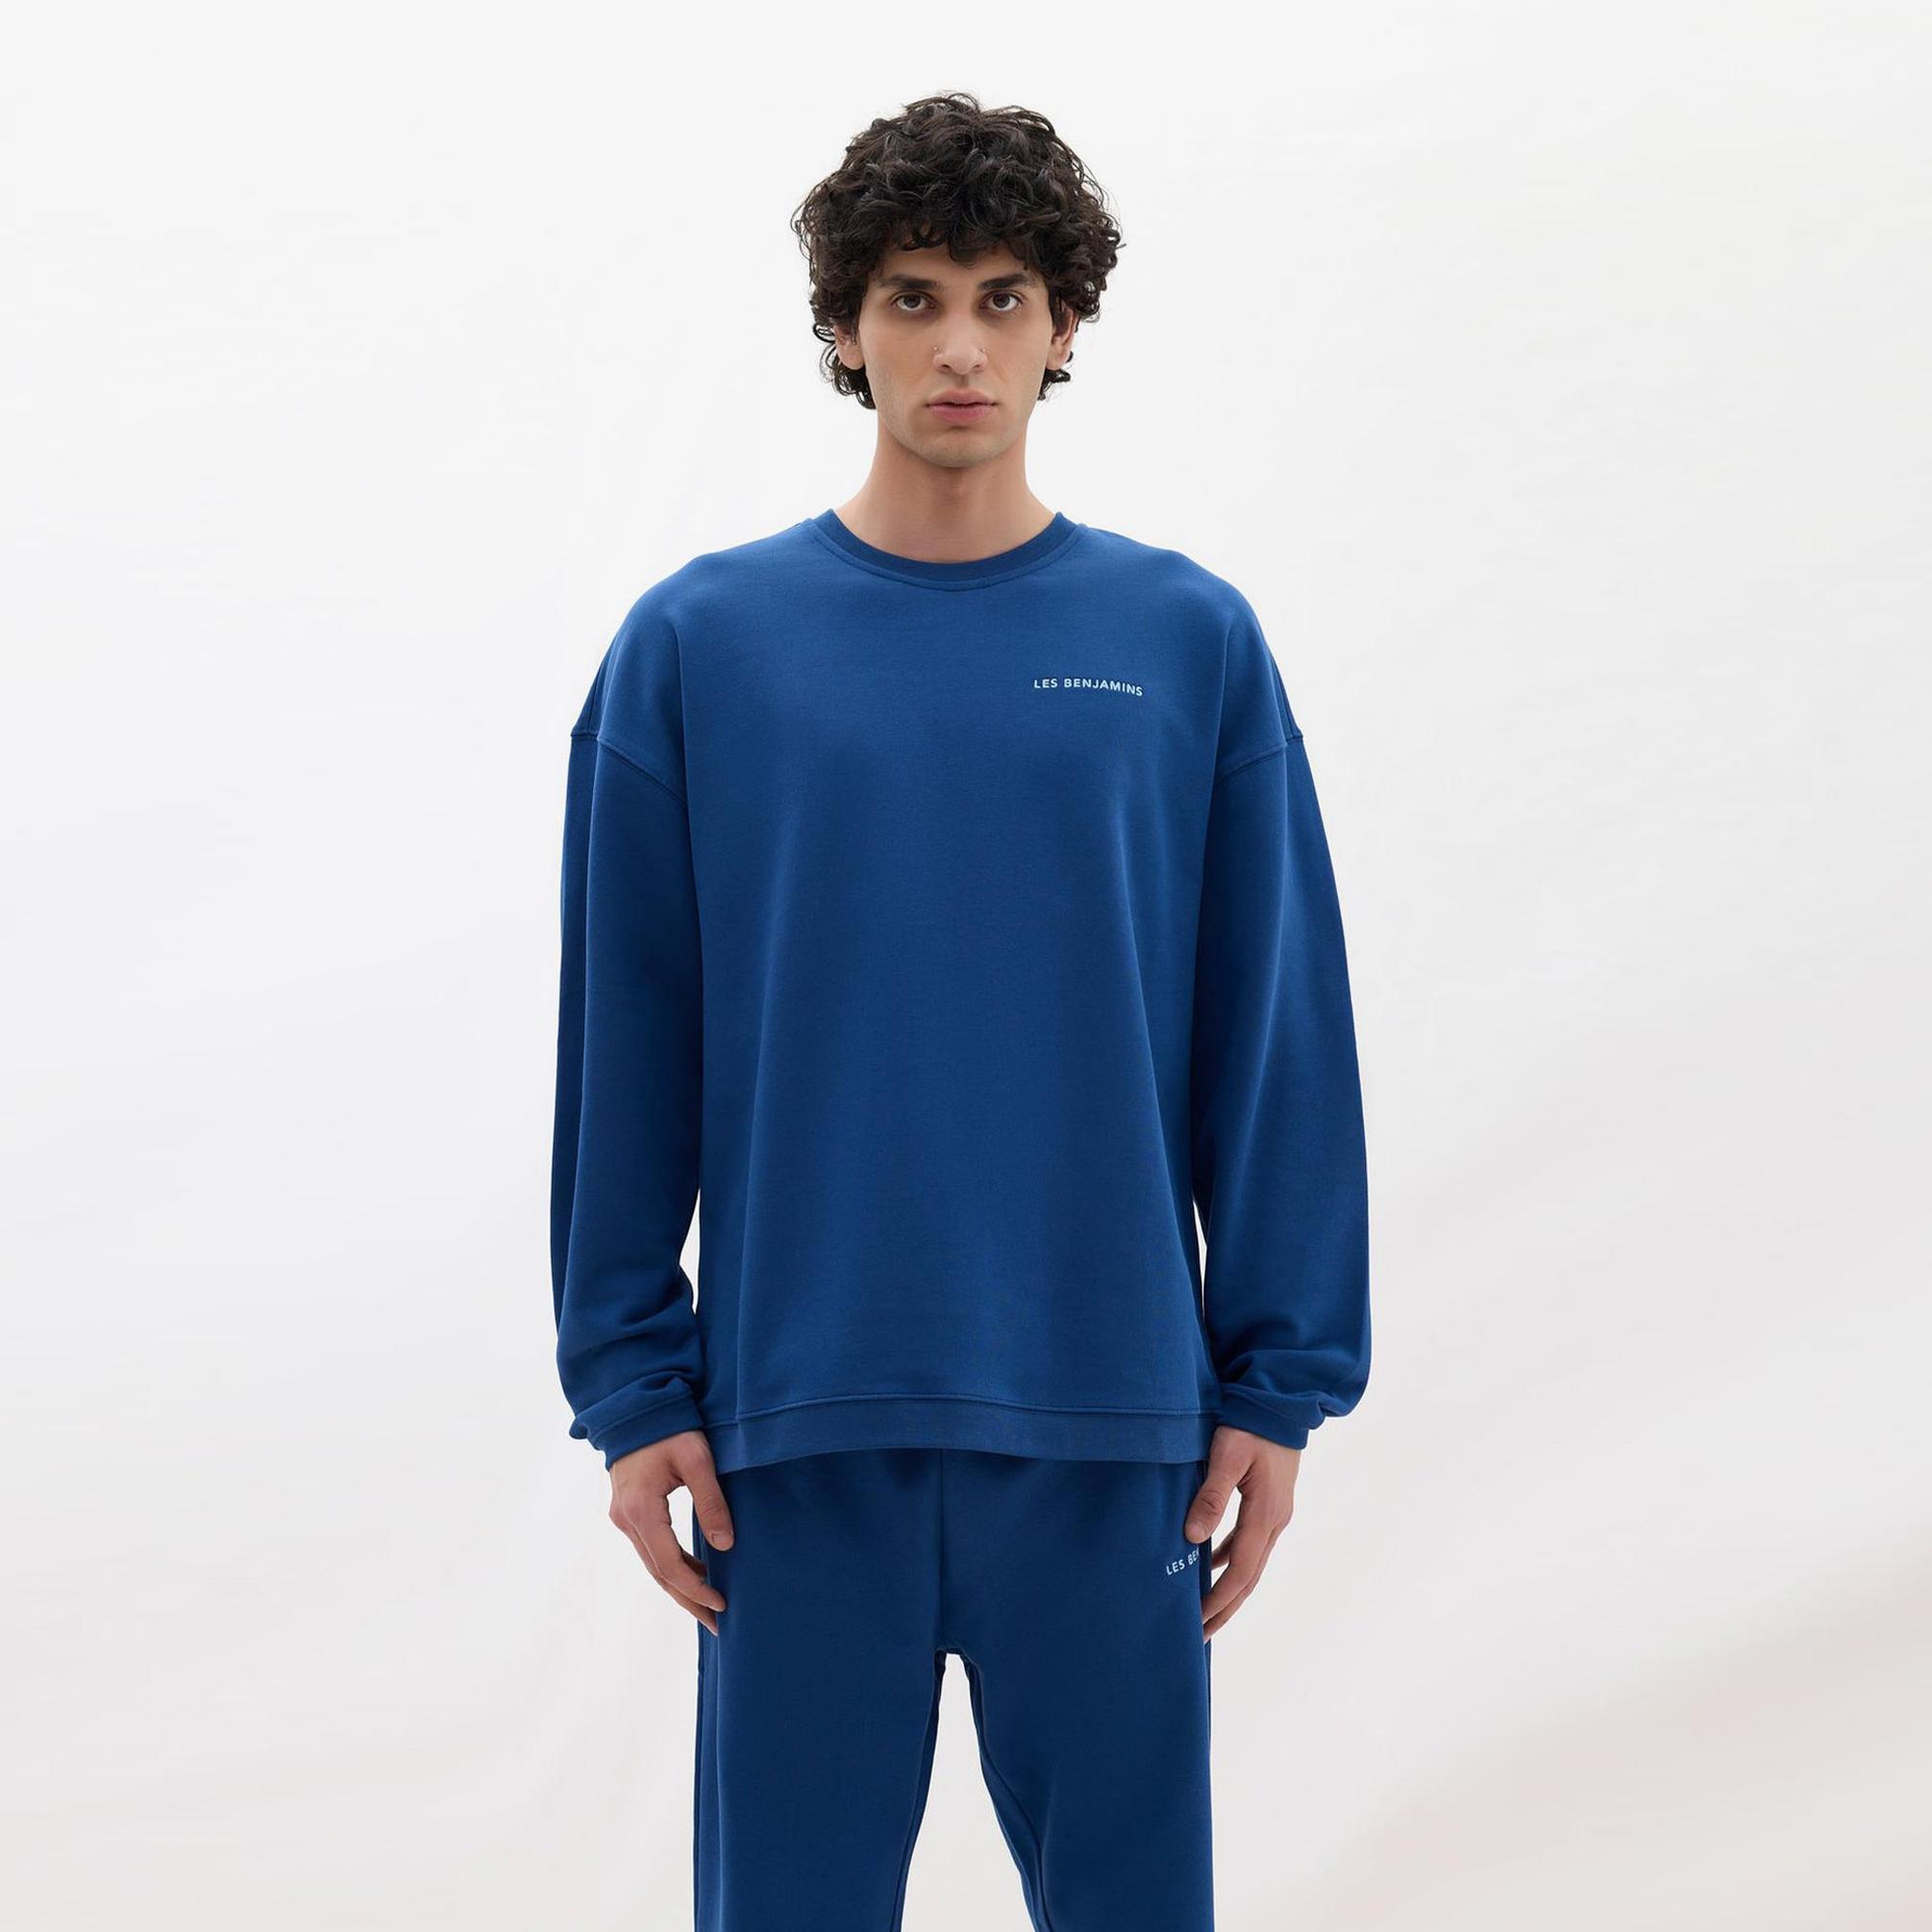  Les Benjamins Core Erkek Mavi Sweatshirt